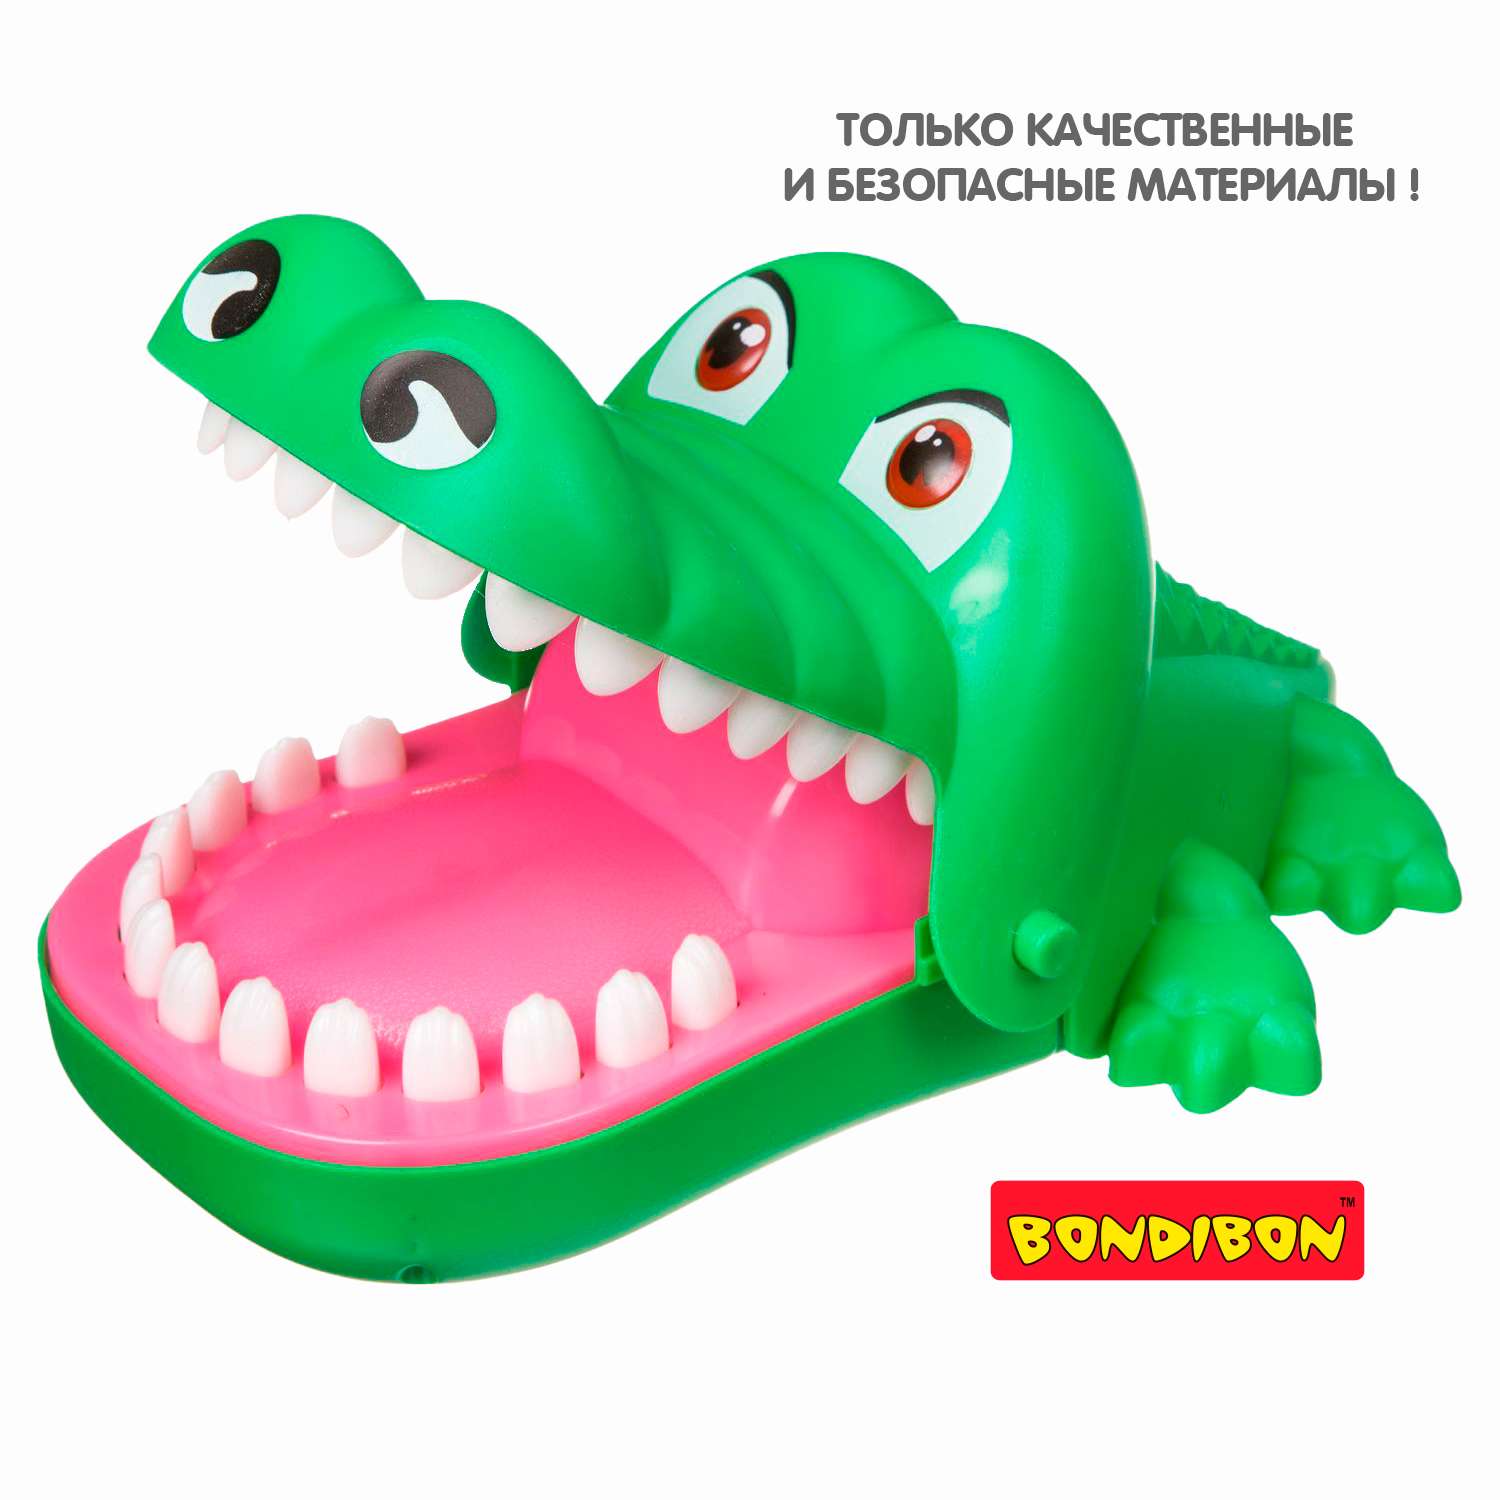 Настольная игра BONDIBON зубастый Крокодил со свето-звуковыми эффектами - фото 11